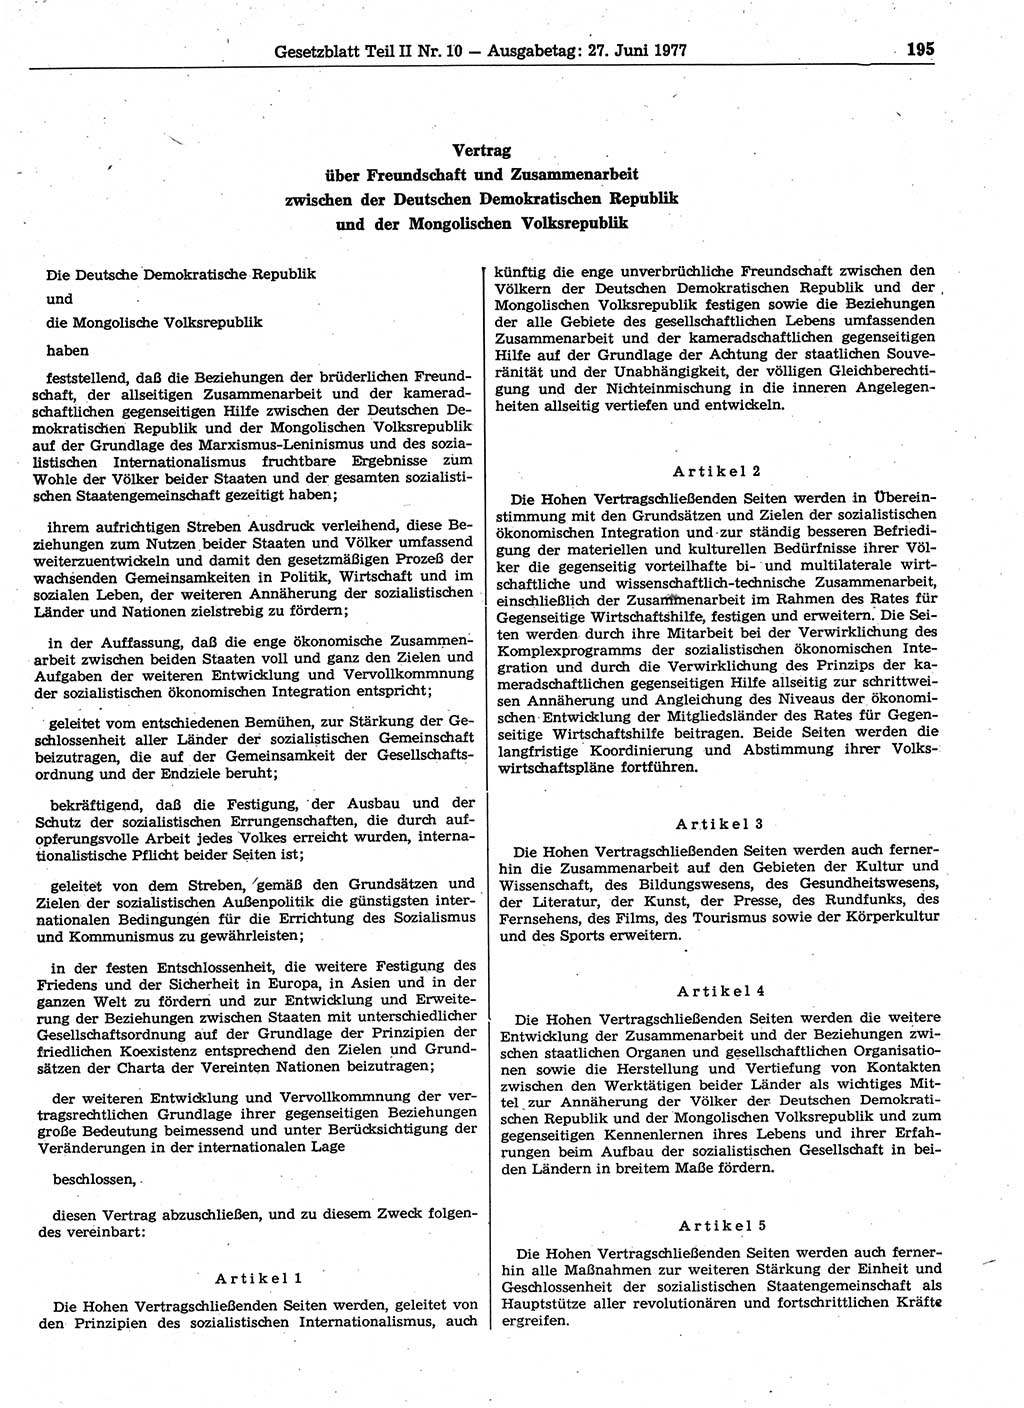 Gesetzblatt (GBl.) der Deutschen Demokratischen Republik (DDR) Teil ⅠⅠ 1977, Seite 195 (GBl. DDR ⅠⅠ 1977, S. 195)